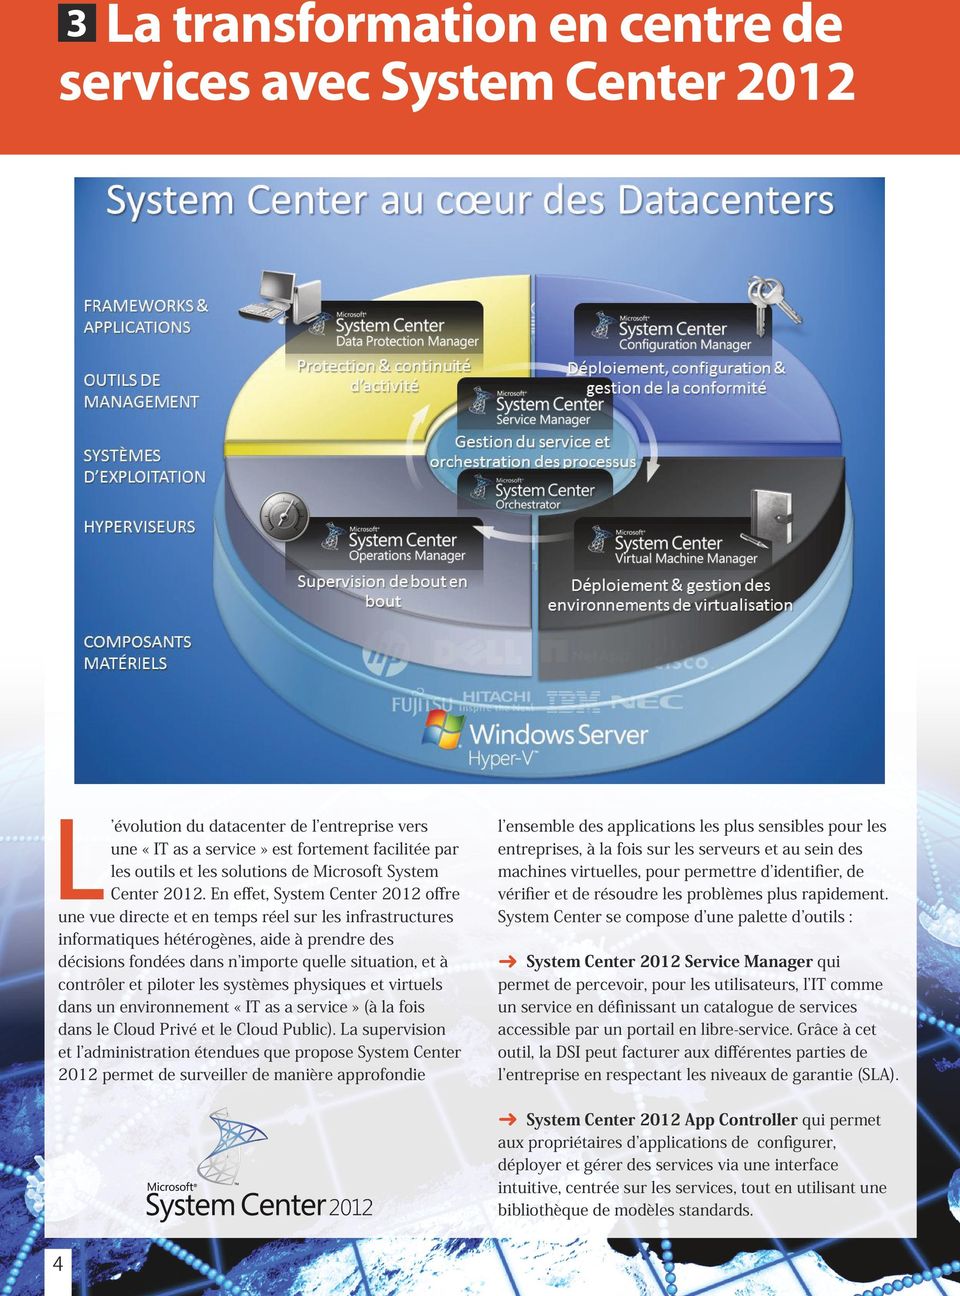 En effet, System Center 2012 offre une vue directe et en temps réel sur les infrastructures informatiques hétérogènes, aide à prendre des décisions fondées dans n importe quelle situation, et à